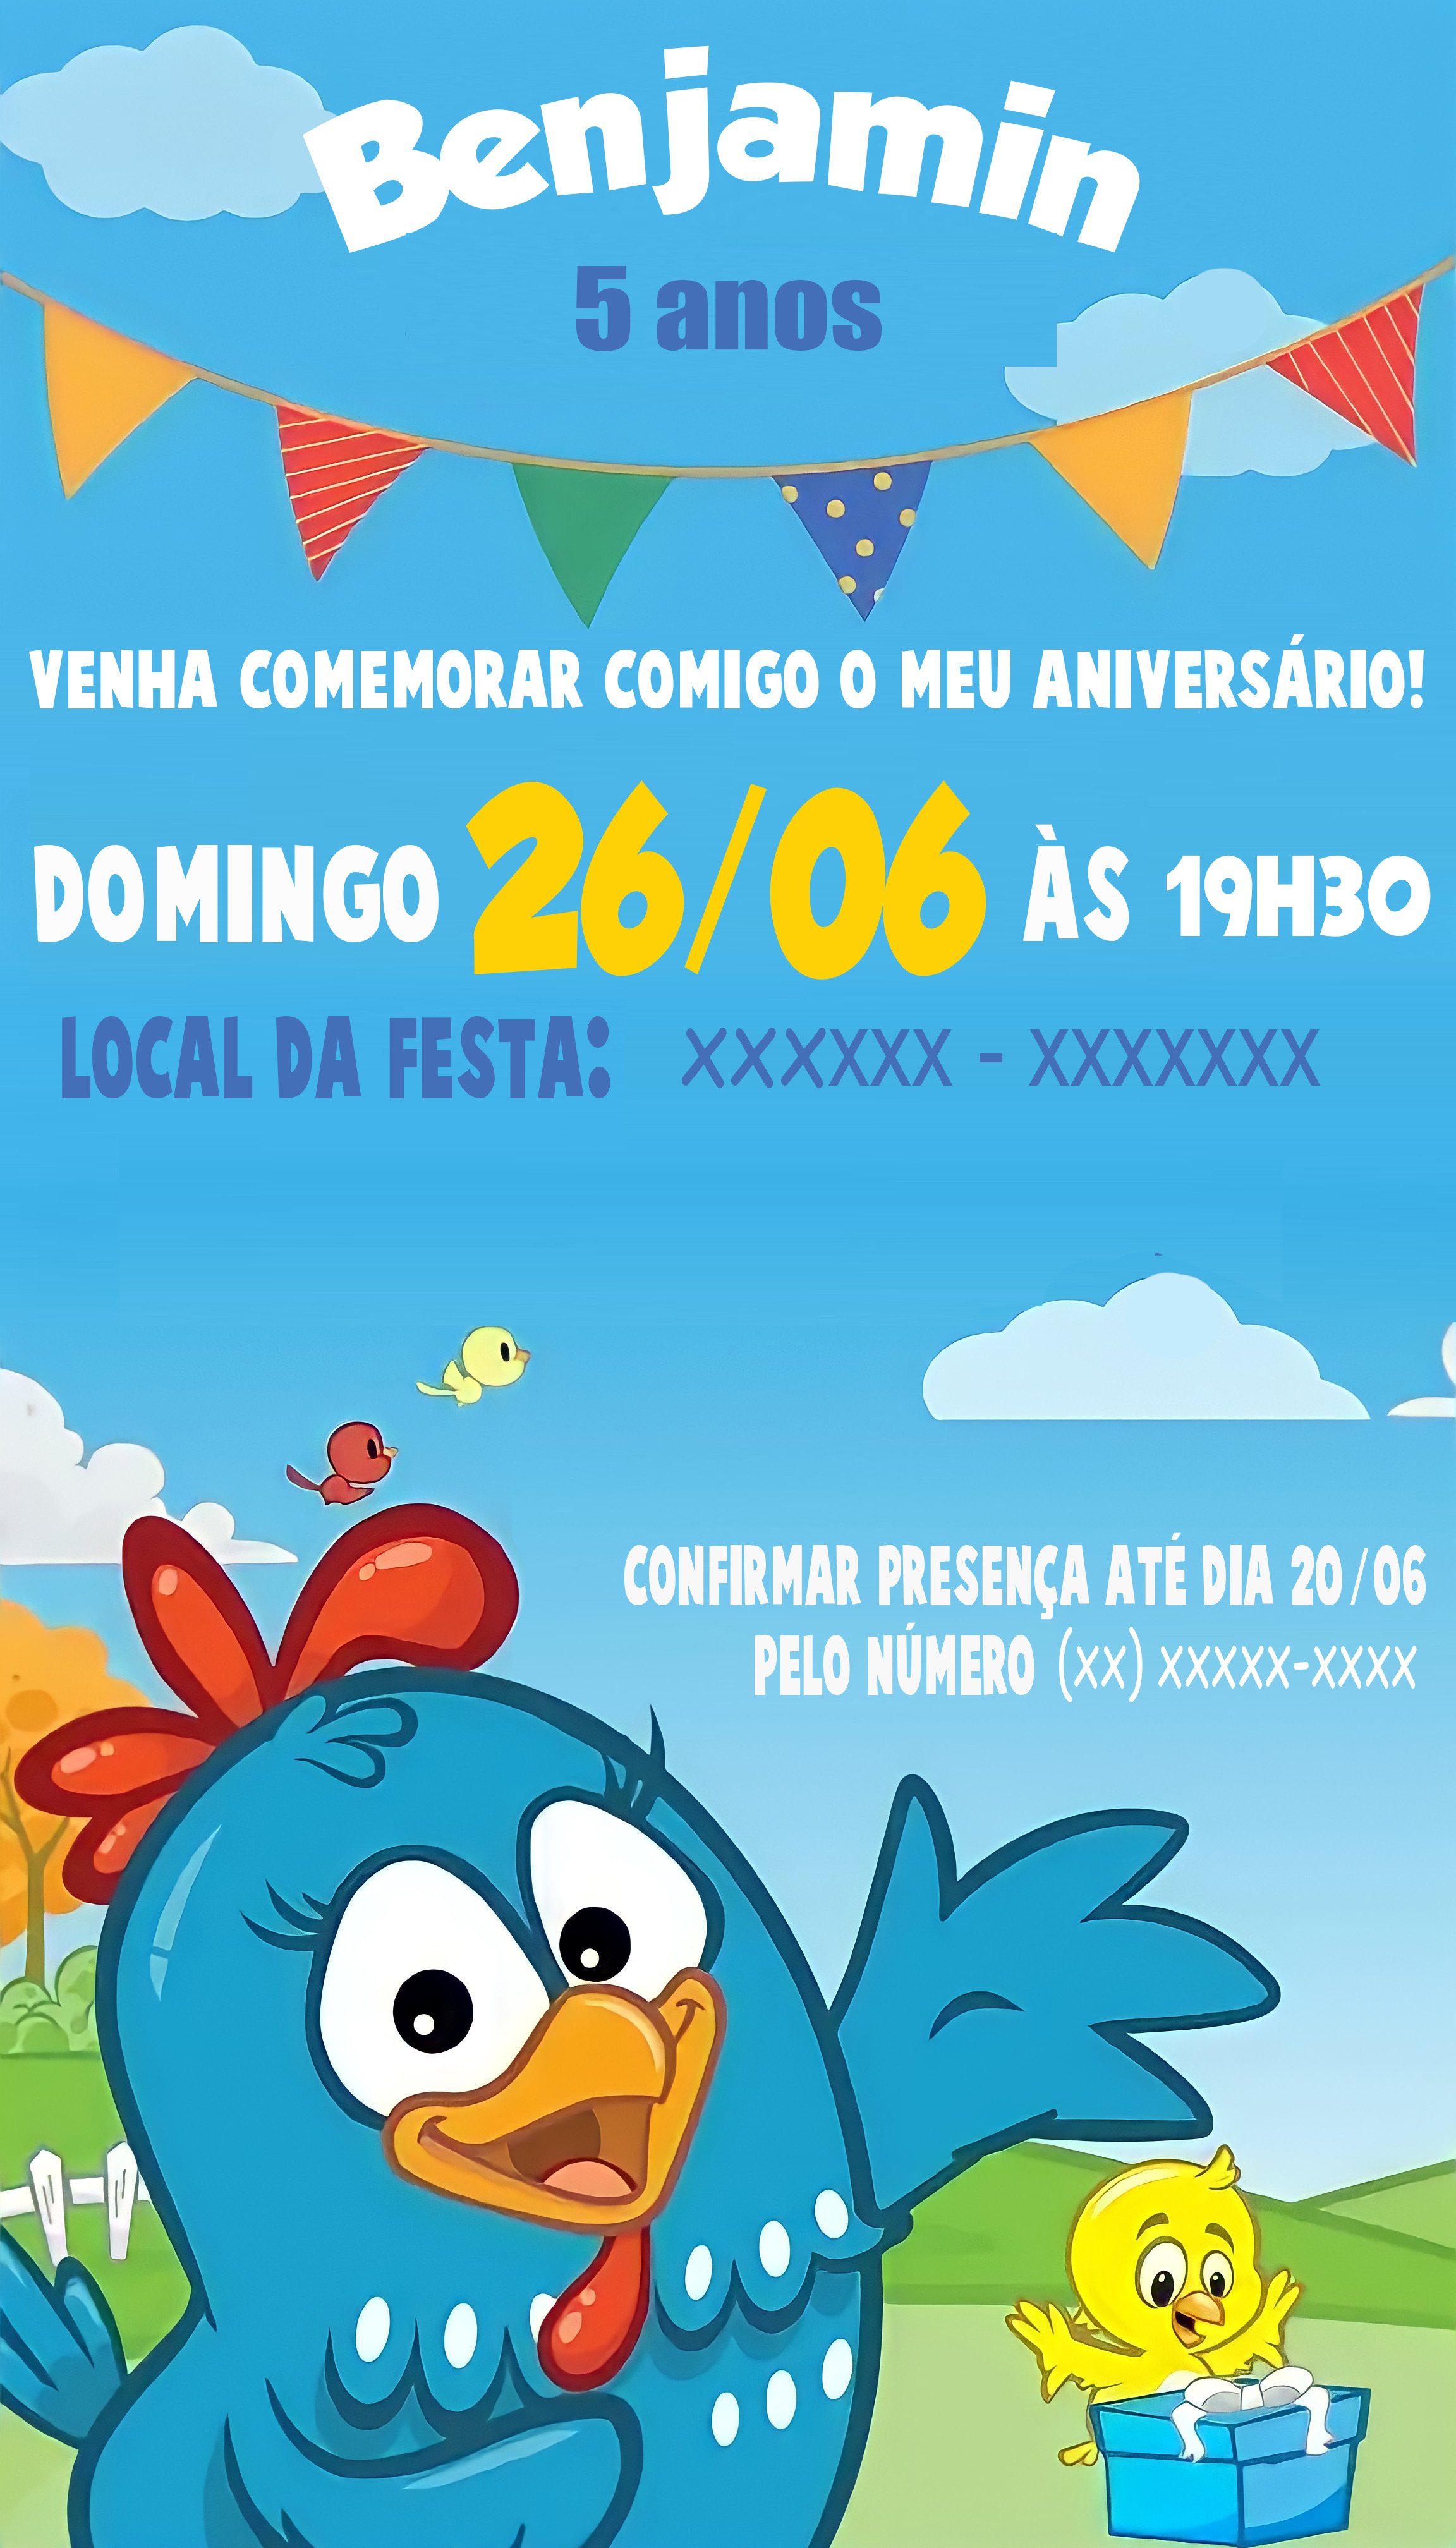 Convite Aniversário Galinha Pintadinha